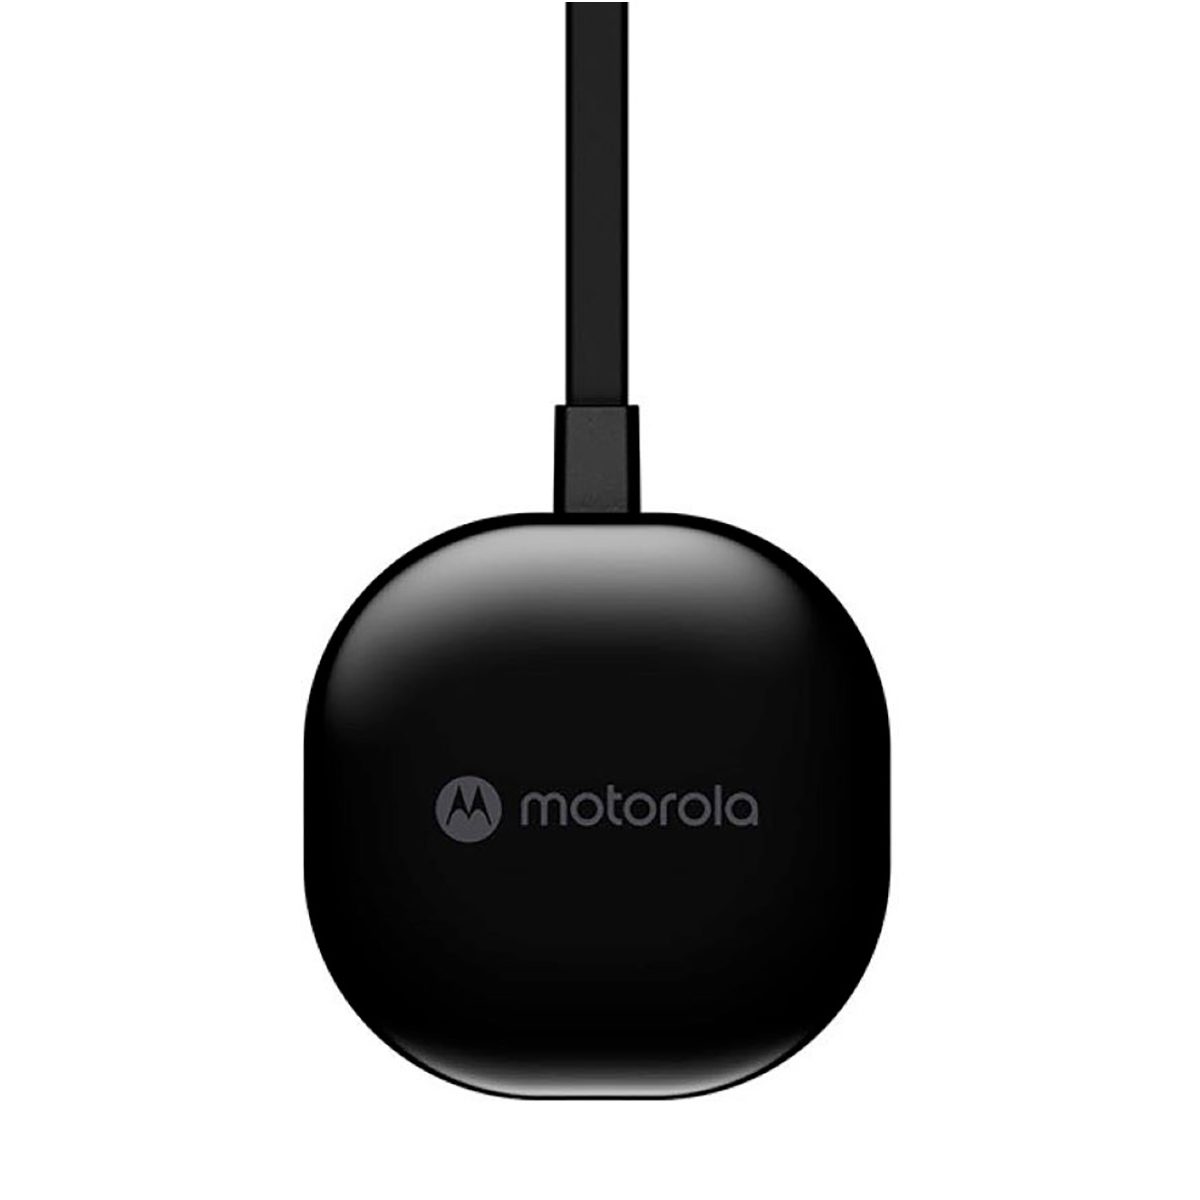 Android Auto Wireless per tutti con Motorola MA1, in super offerta su